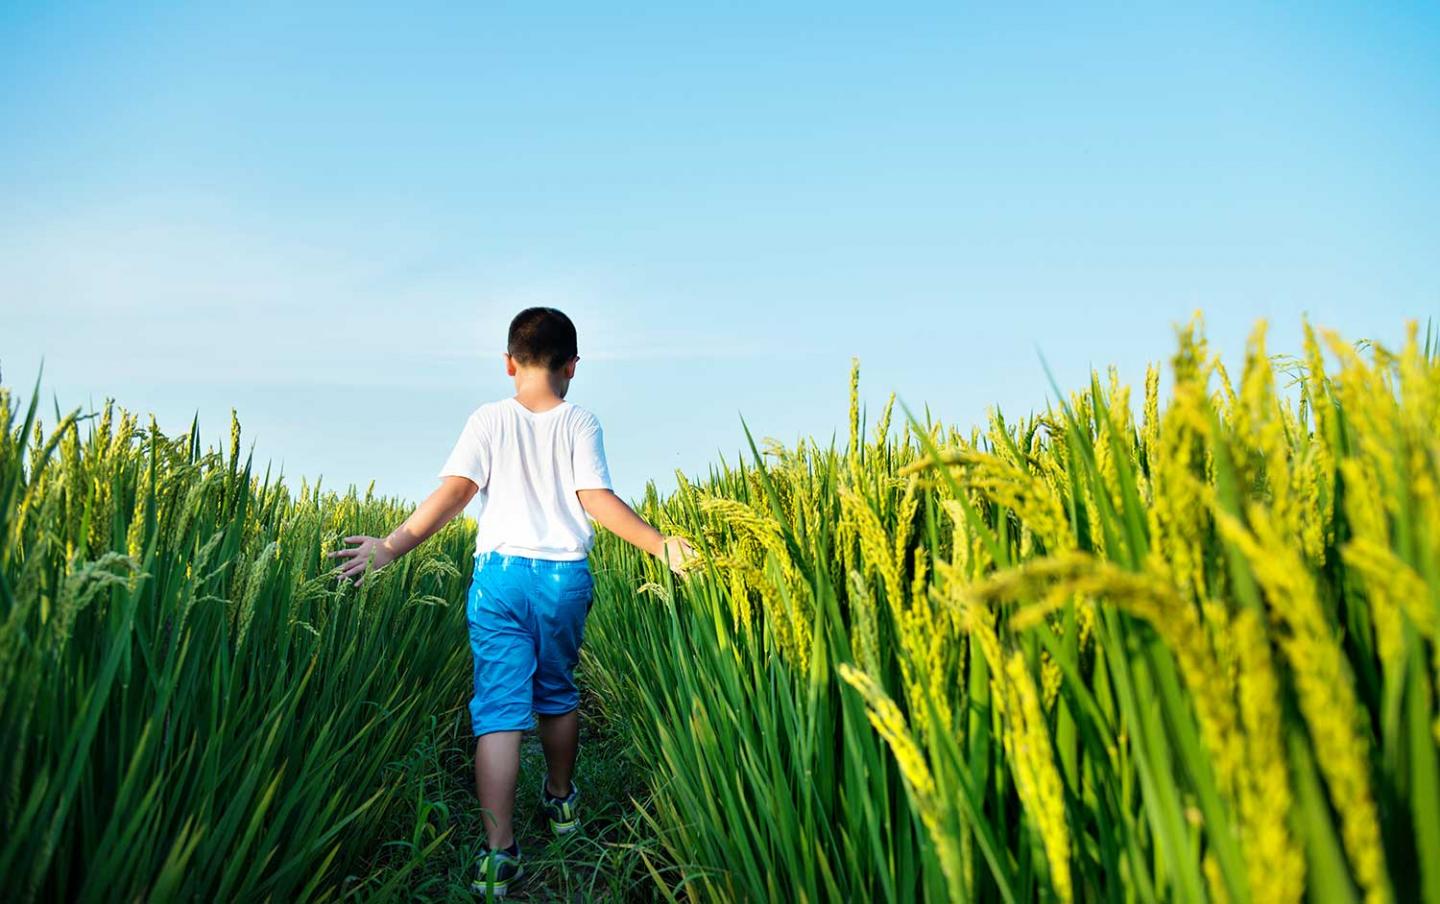 Little boy walking in a rice field